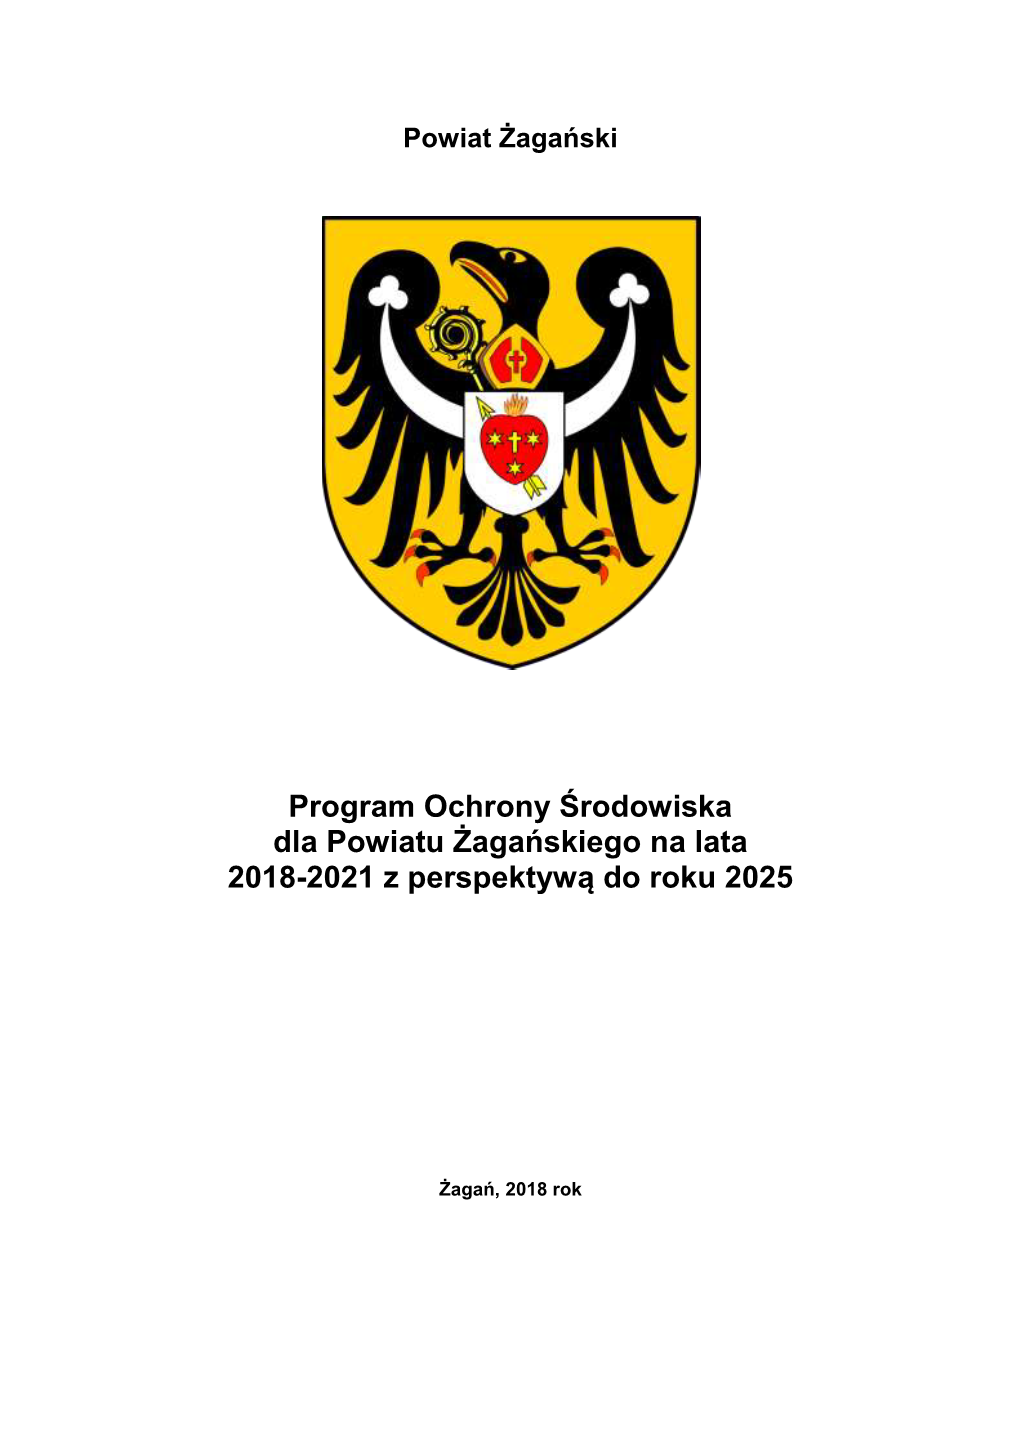 Program Ochrony Środowiska Dla Powiatu Żagańskiego Na Lata 2018-2021 Z Perspektywą Do Roku 2025